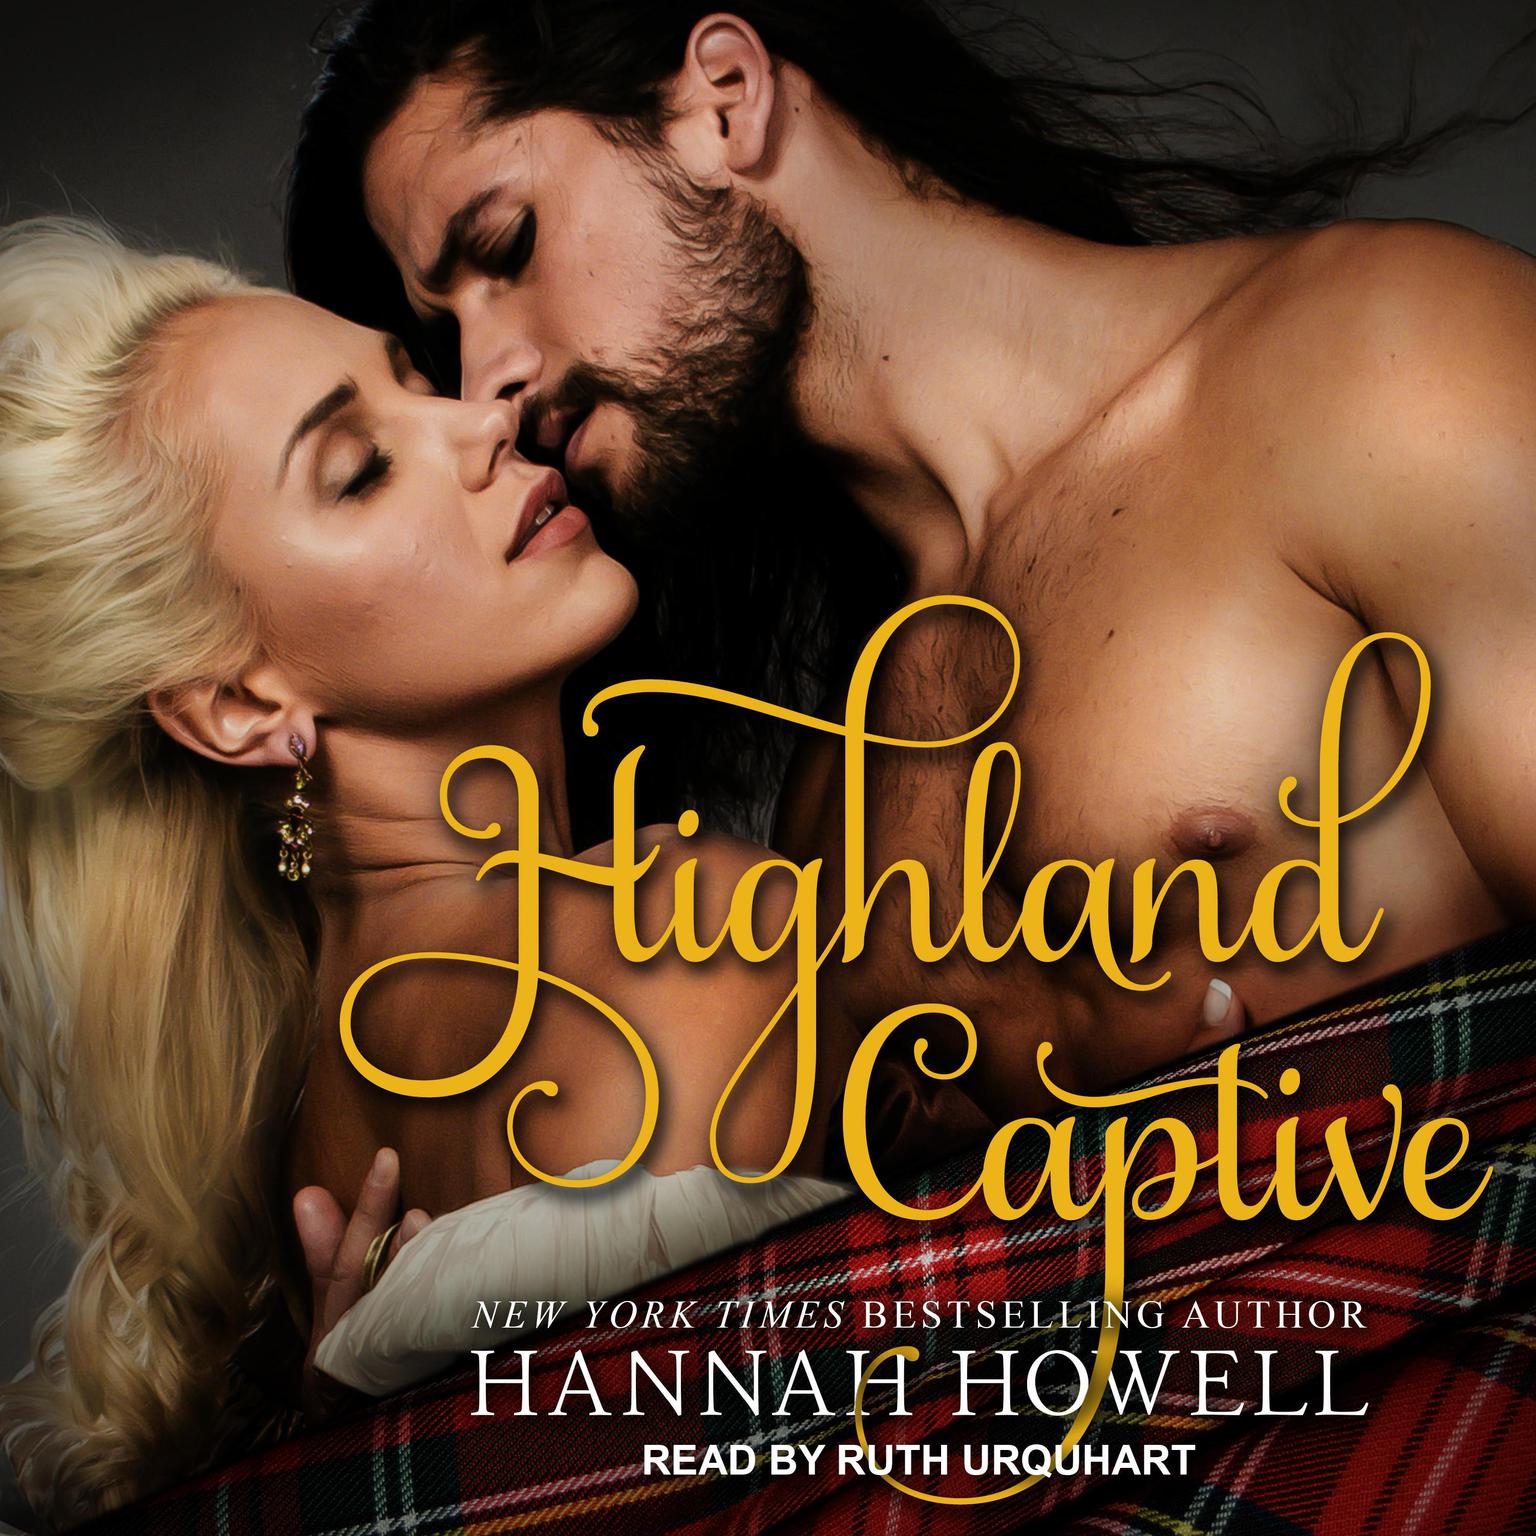 Highland Captive Audiobook, by Hannah Howell